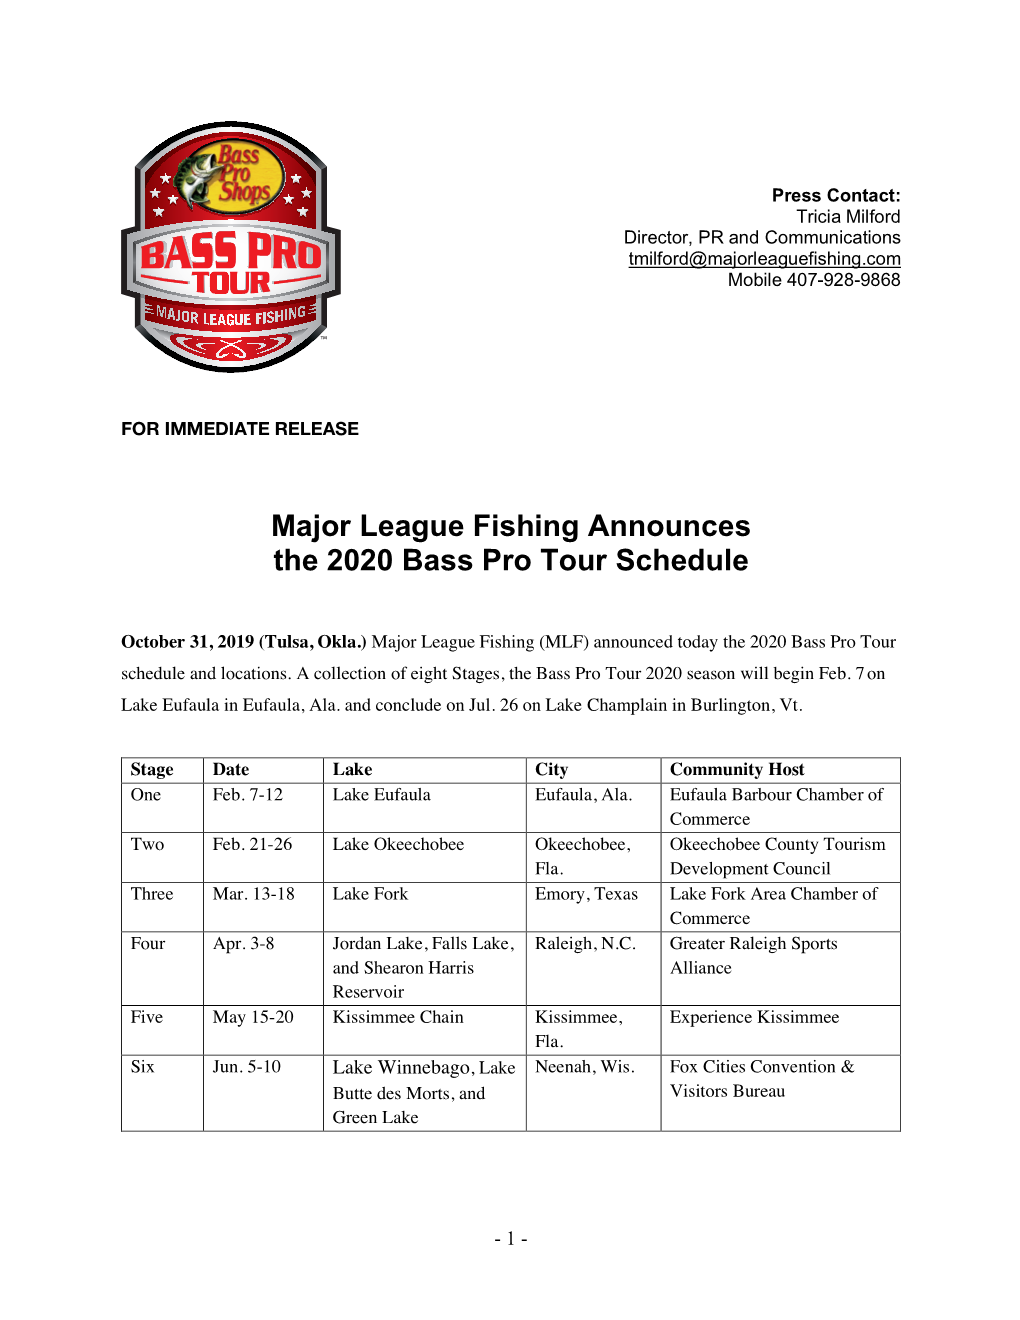 Major League Fishing Announces the 2020 Bass Pro Tour Schedule